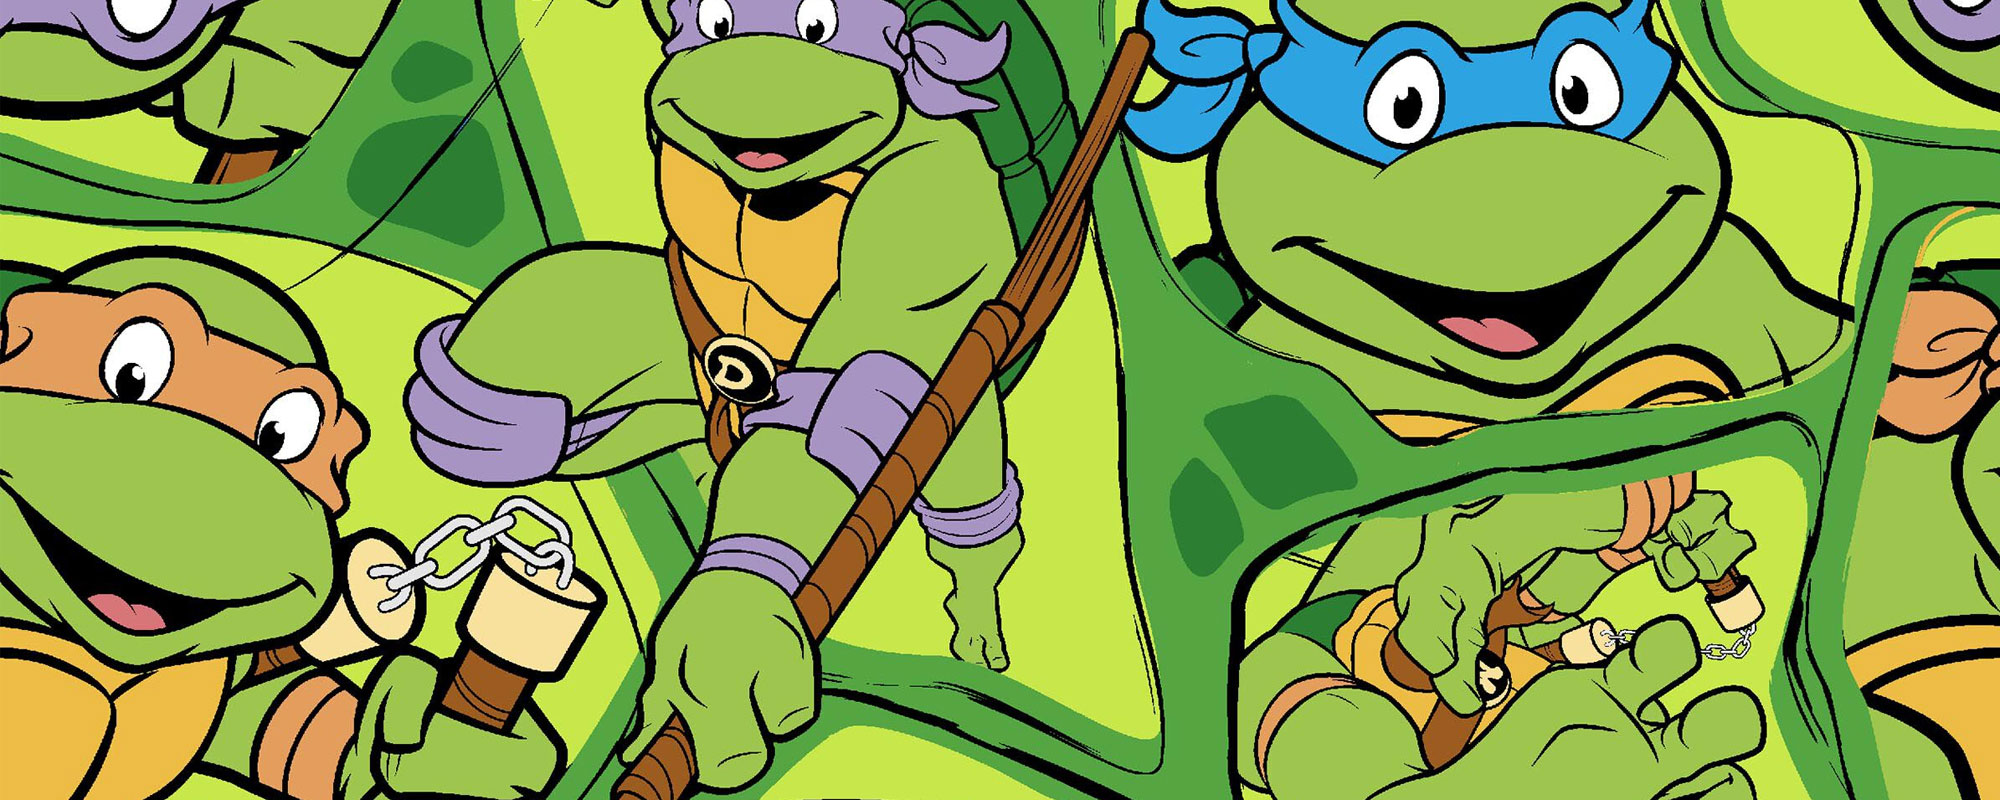 triathlete arm lovgivning Teenage Mutant Ninja Turtles - Shirtstore